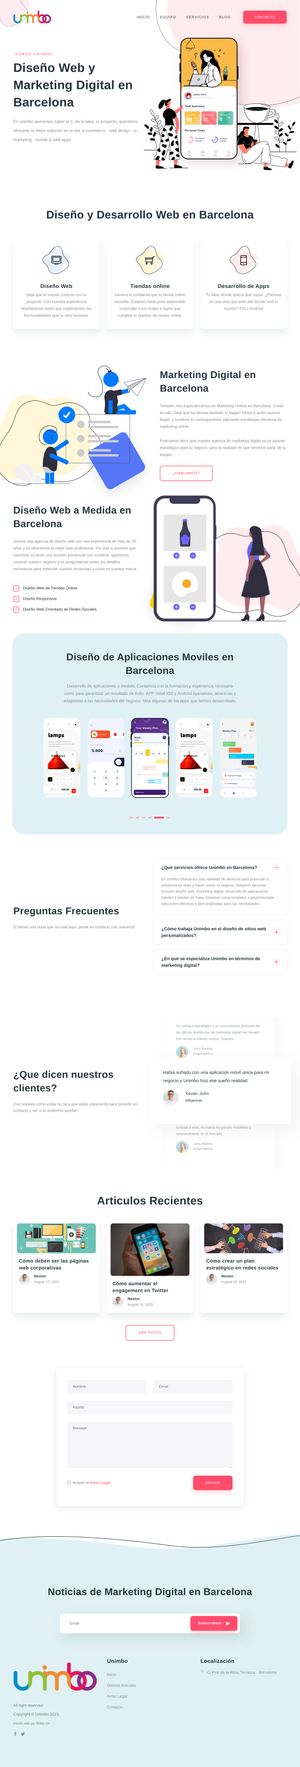 Ejemplo de diseño web completo en Mataró: Muestra la página web profesional que ha diseñado Ridaly para unimbo